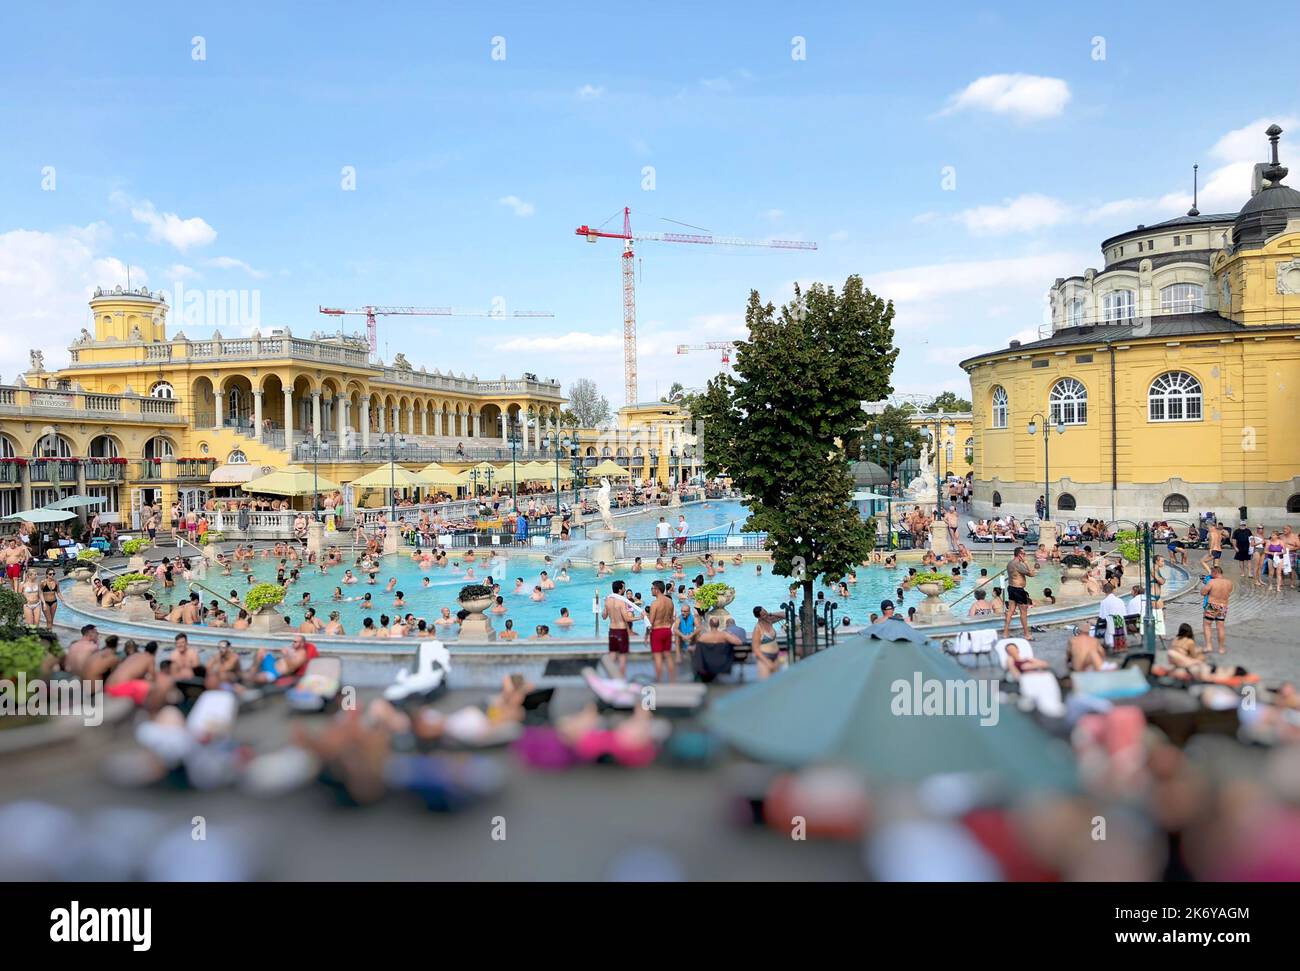 Vue panoramique sur les thermes et le spa (appelés bains médicinaux Széchenyi) à Budapest, Hongrie Banque D'Images